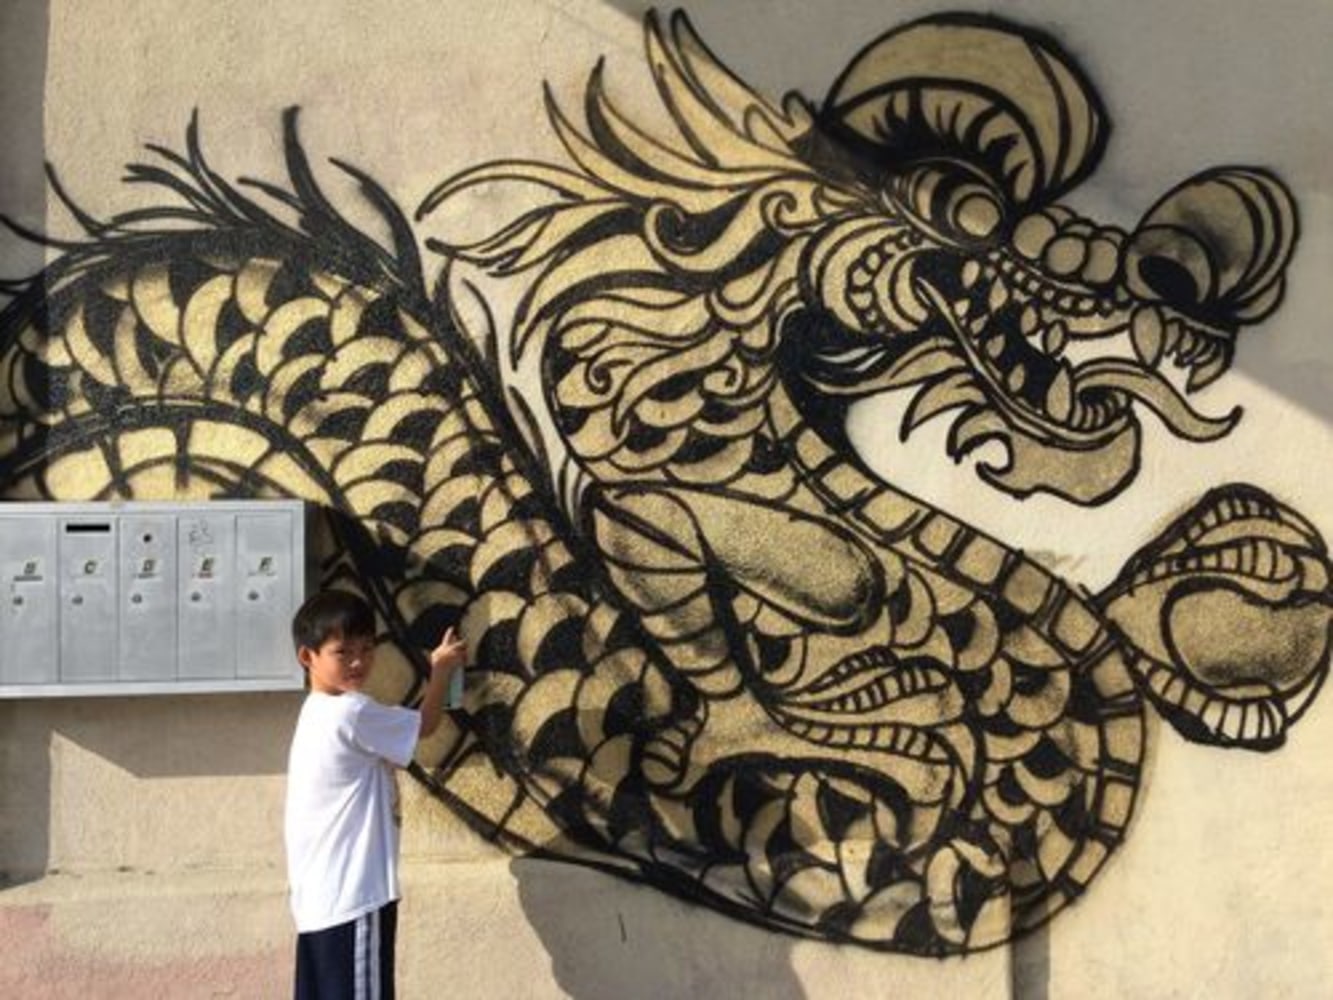 Граффити дракона на стене